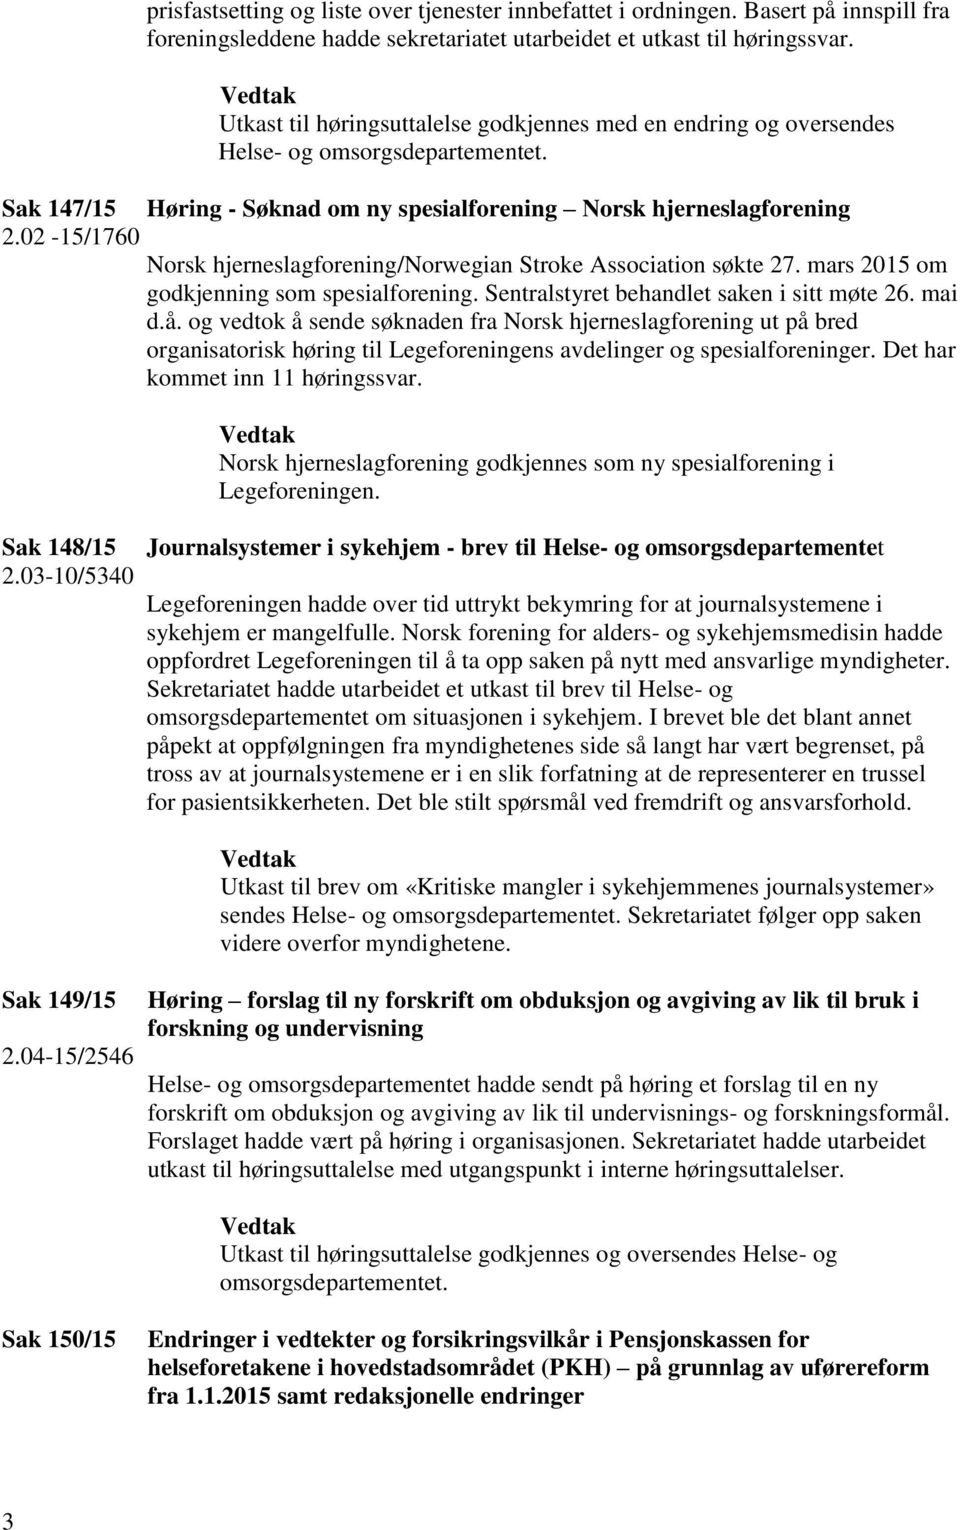 02-15/1760 Norsk hjerneslagforening/norwegian Stroke Association søkte 27. mars 2015 om godkjenning som spesialforening. Sentralstyret behandlet saken i sitt møte 26. mai d.å.